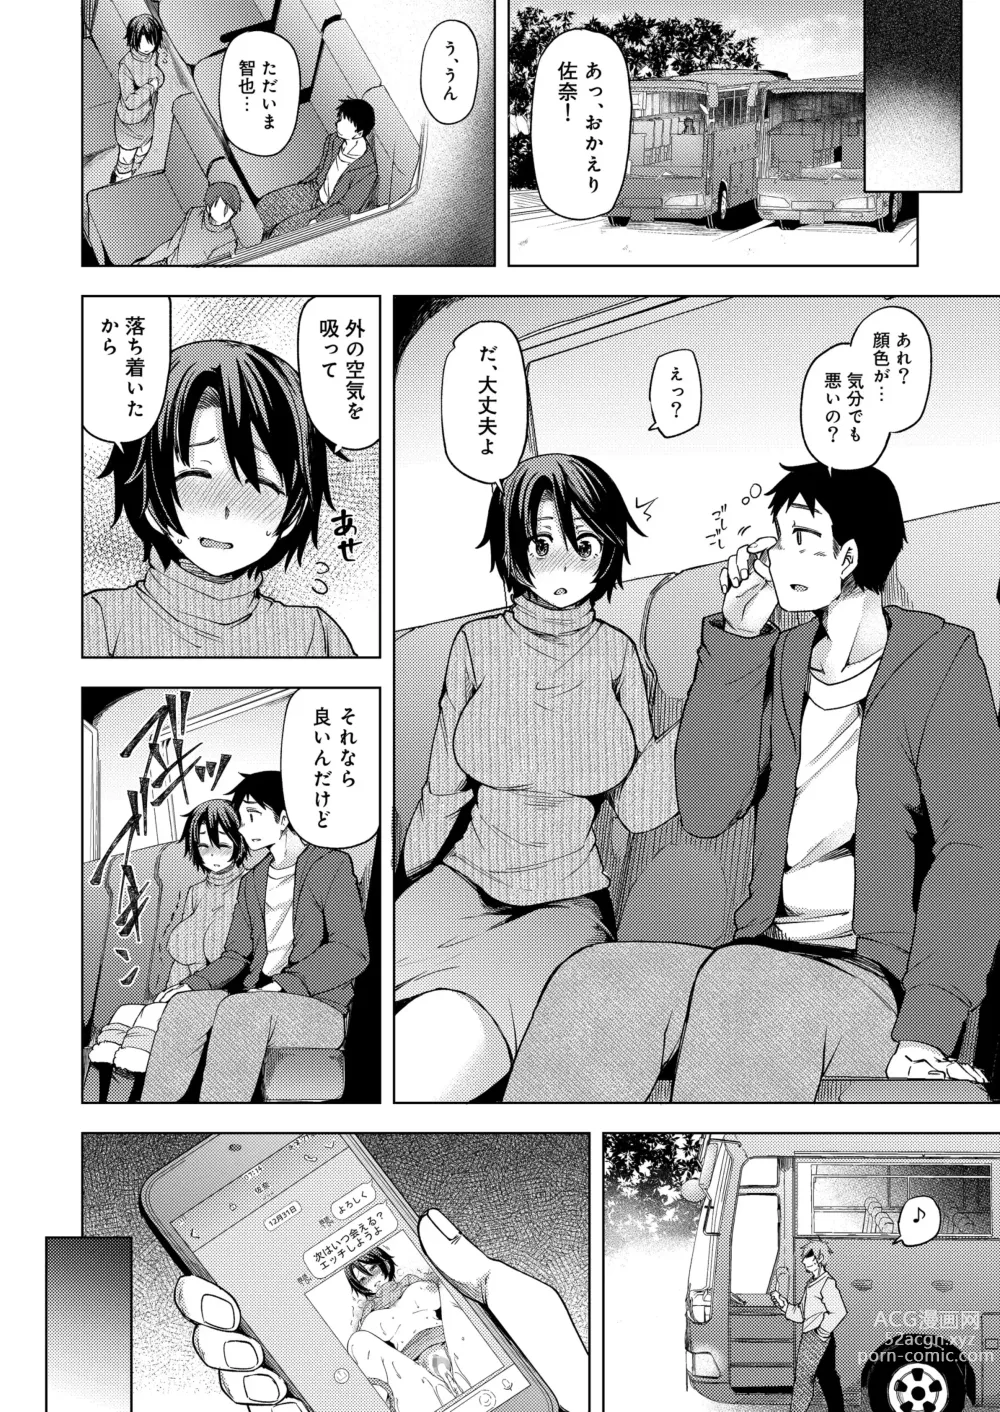 Page 50 of doujinshi 夜行バスで痴漢され寝取られた妻